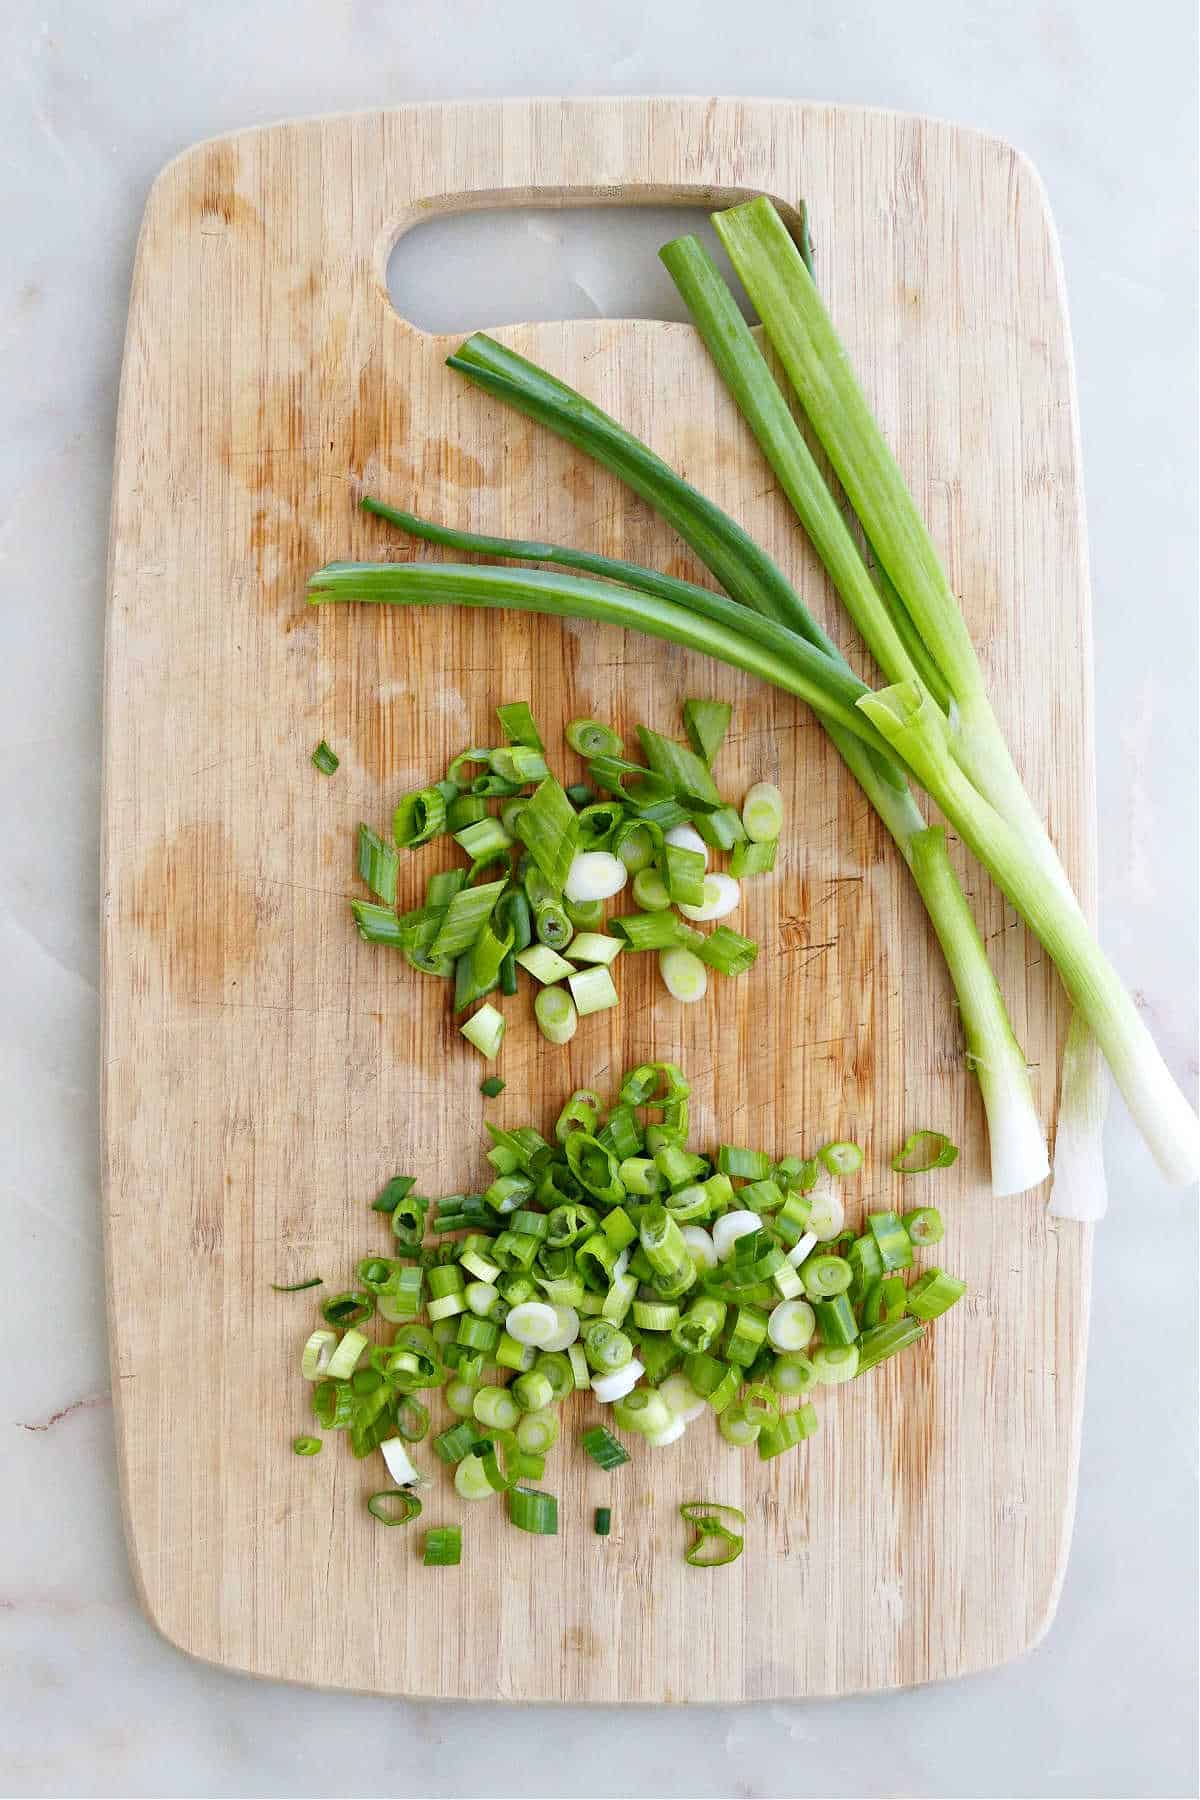 https://itsavegworldafterall.com/wp-content/uploads/2023/05/How-to-Cut-Green-Onions.jpg